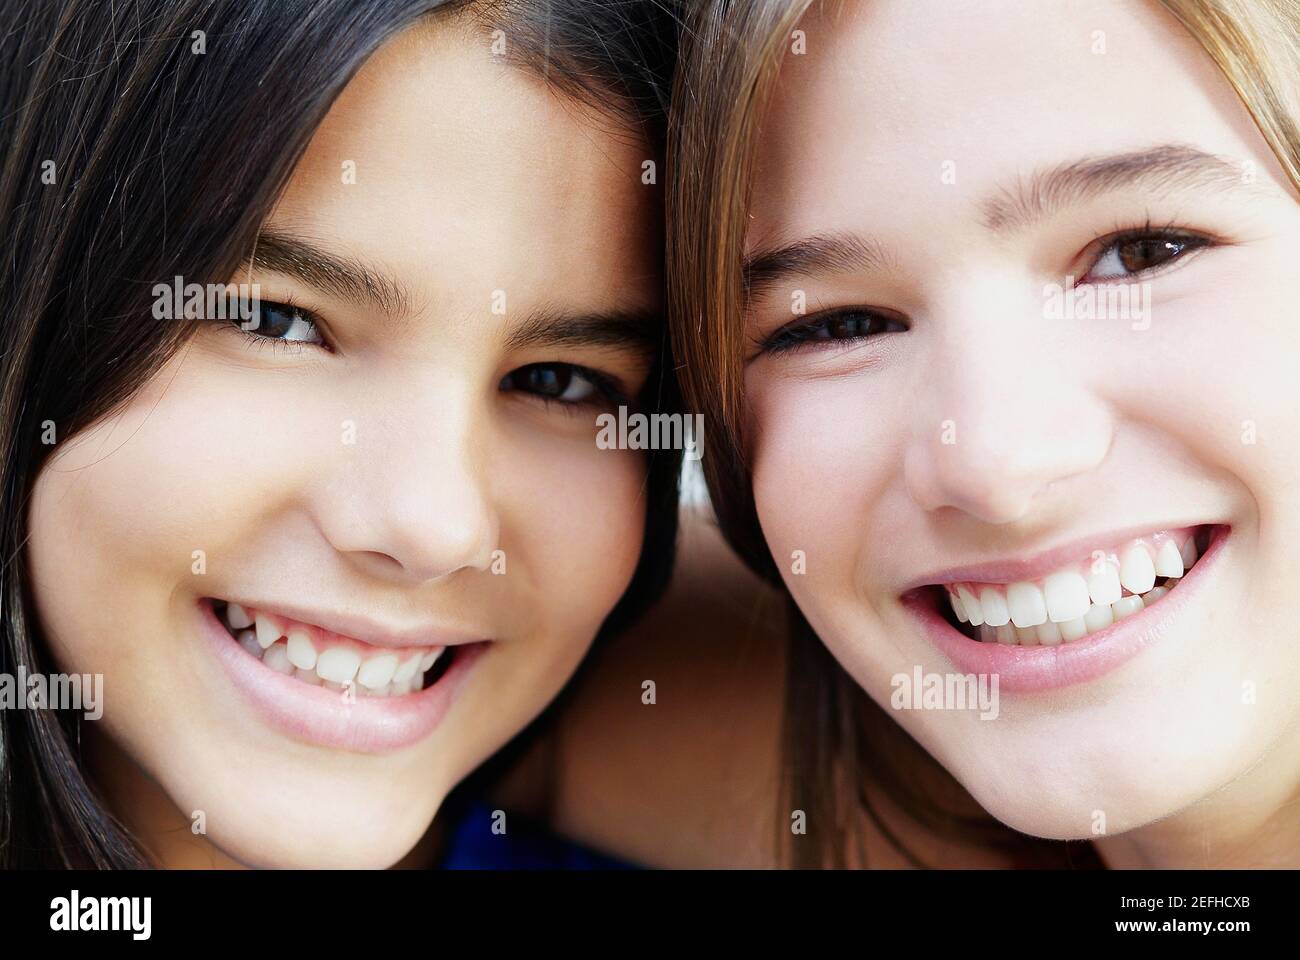 Porträt von zwei Mädchen lächelnd Stockfoto